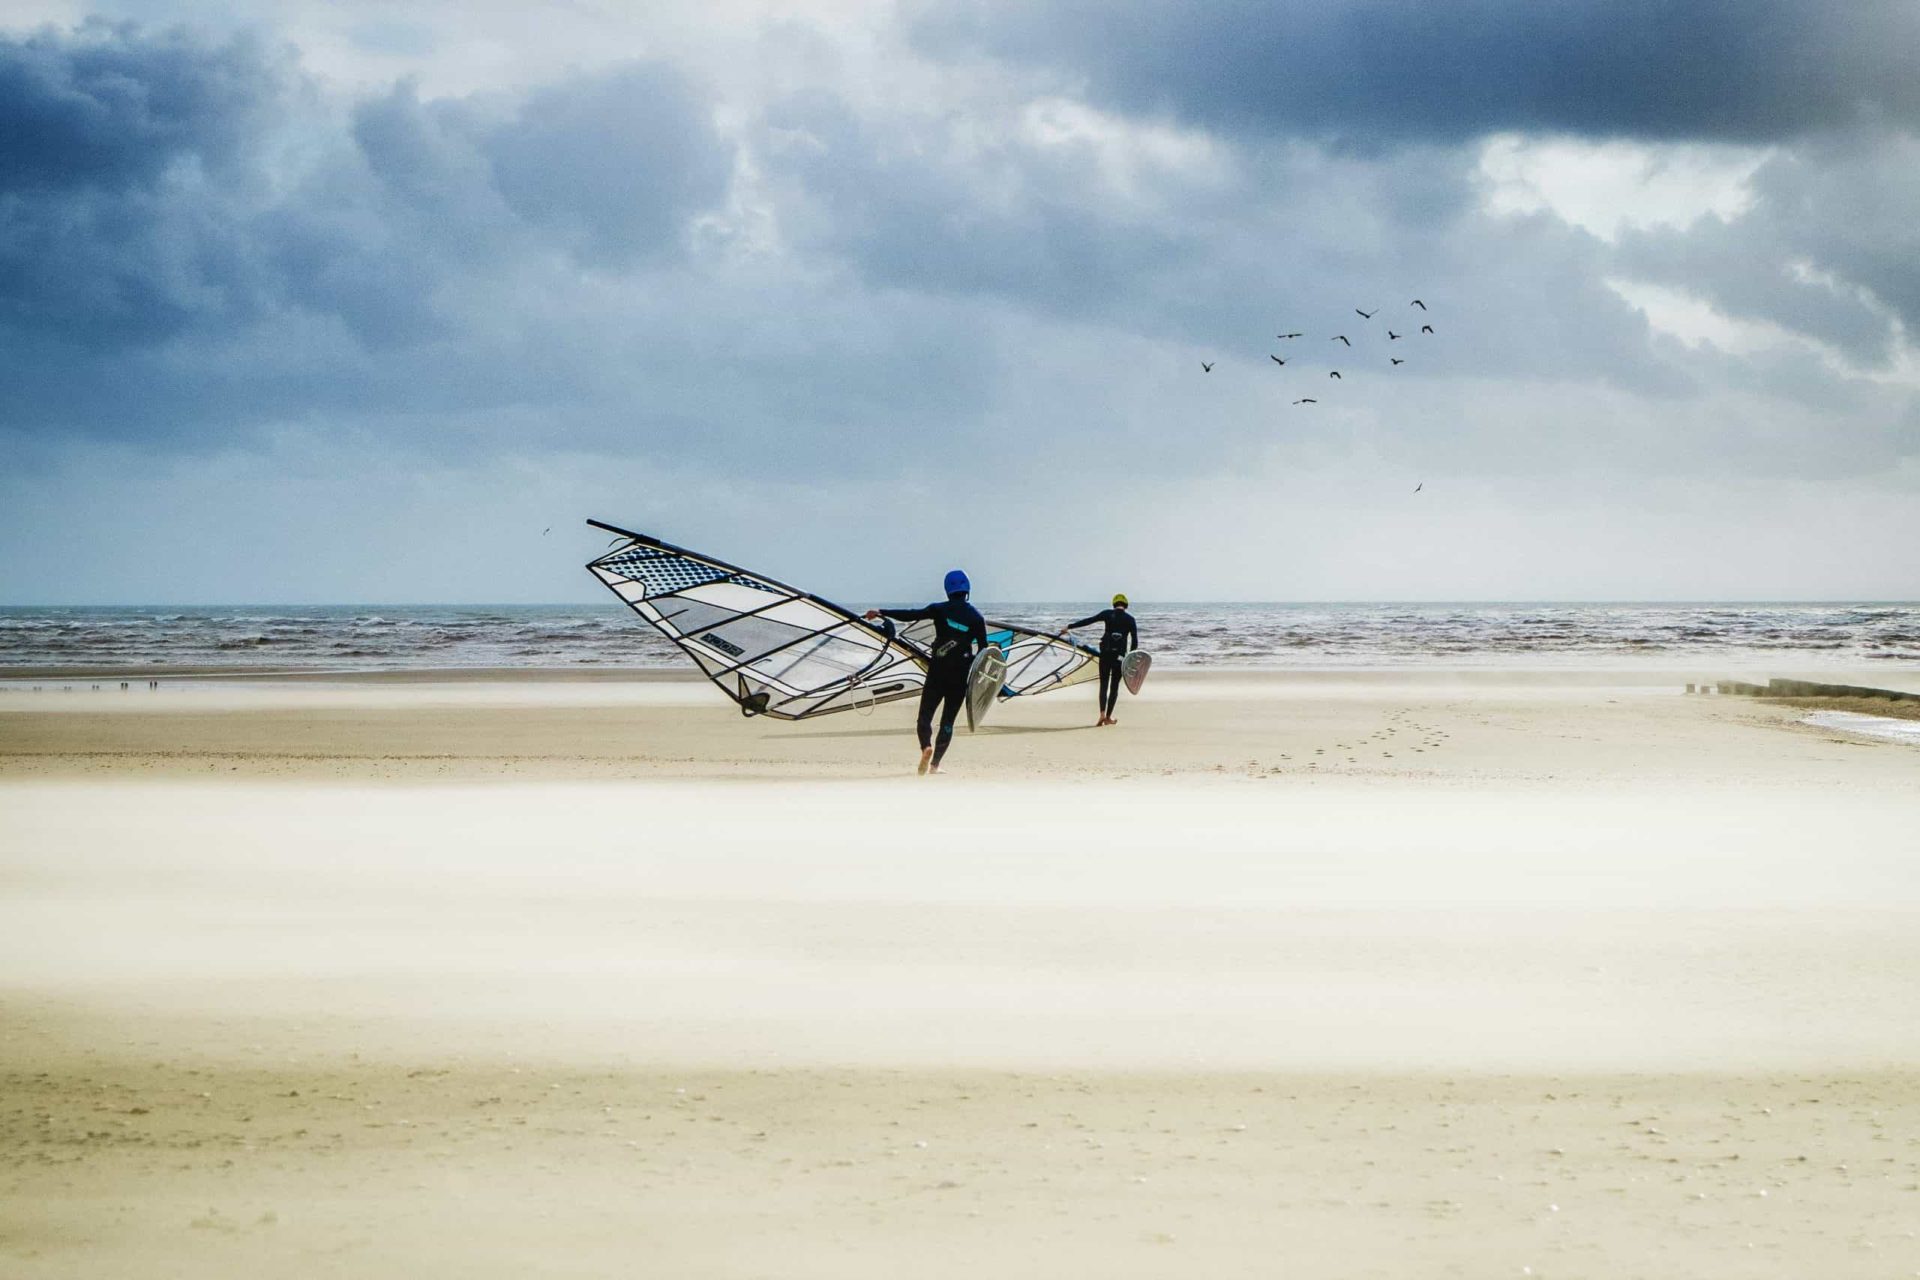 Maszoperia, Surfpoint, Solar Chałupy – czyli obozy windsurfingowe na Półwyspie Helskim